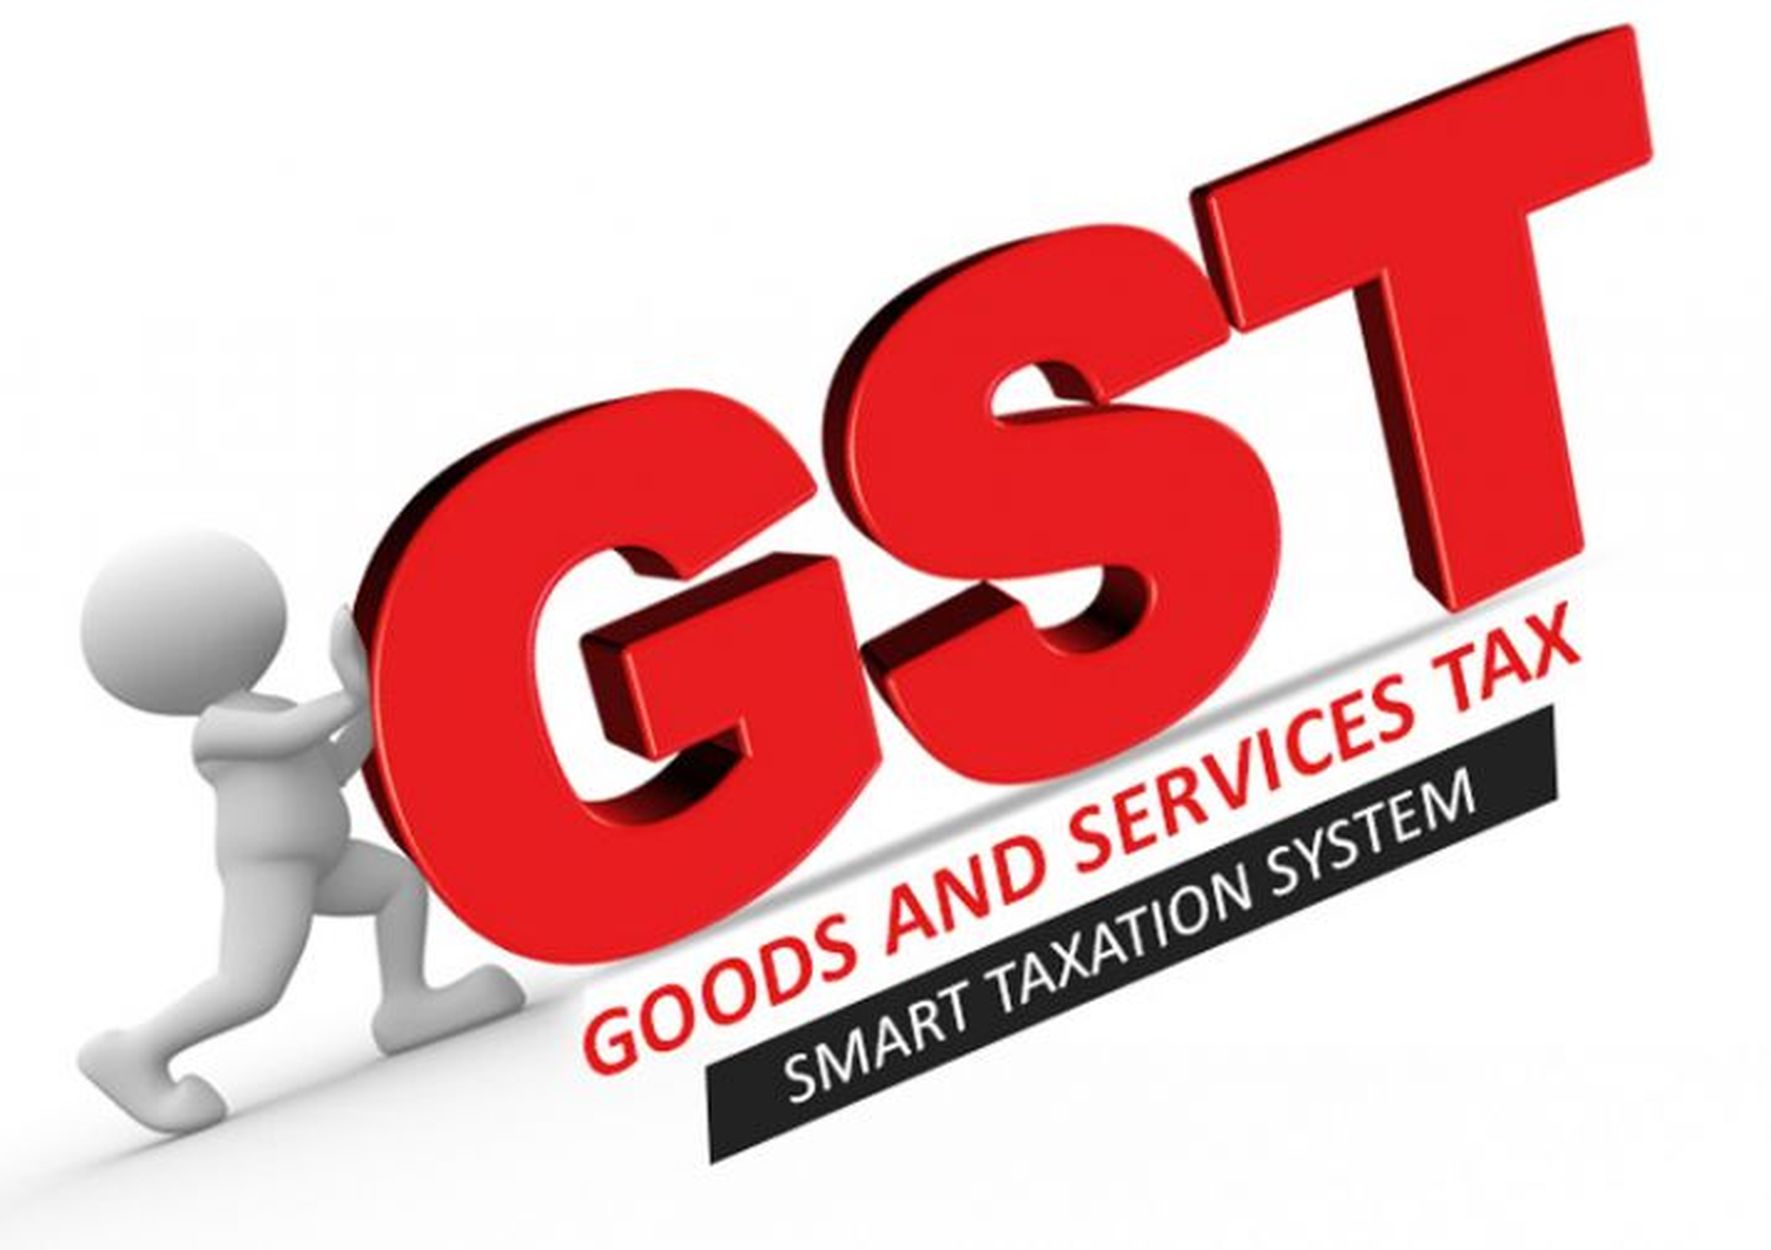 gst news- चार स्थानों से करोड़ो रुपए की टैक्सचोरी पकड़ी